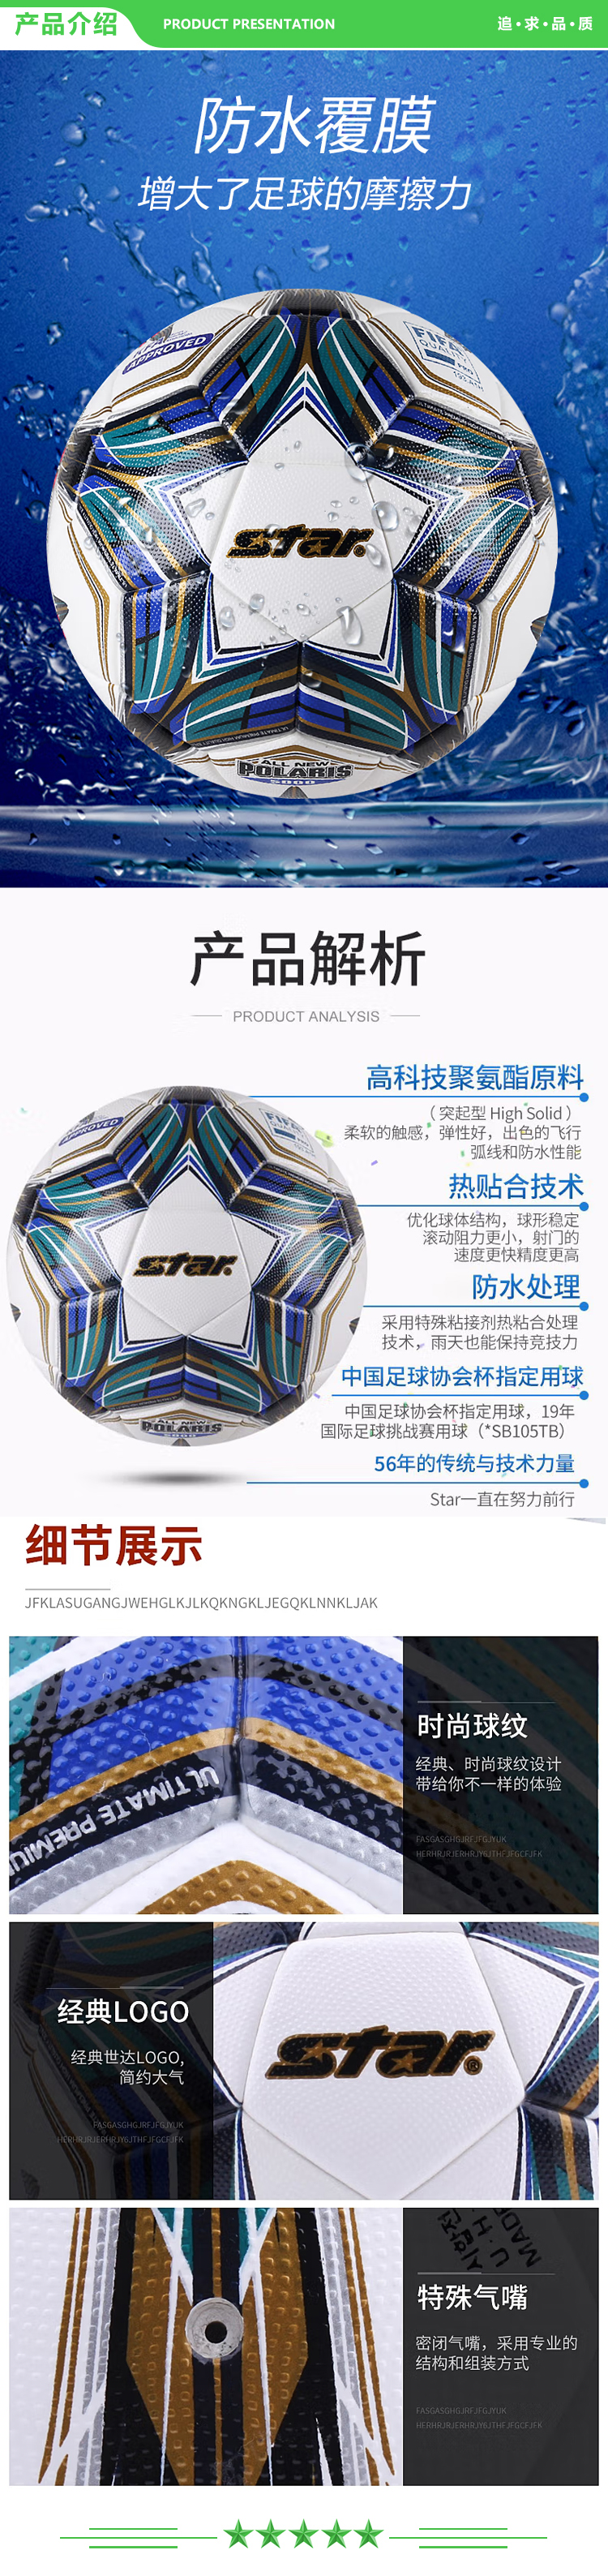 世达 star SB105TB 国际足协公认足球5号大型比赛用球防滑耐磨热贴合足球中冠联赛指定用球  2.jpg